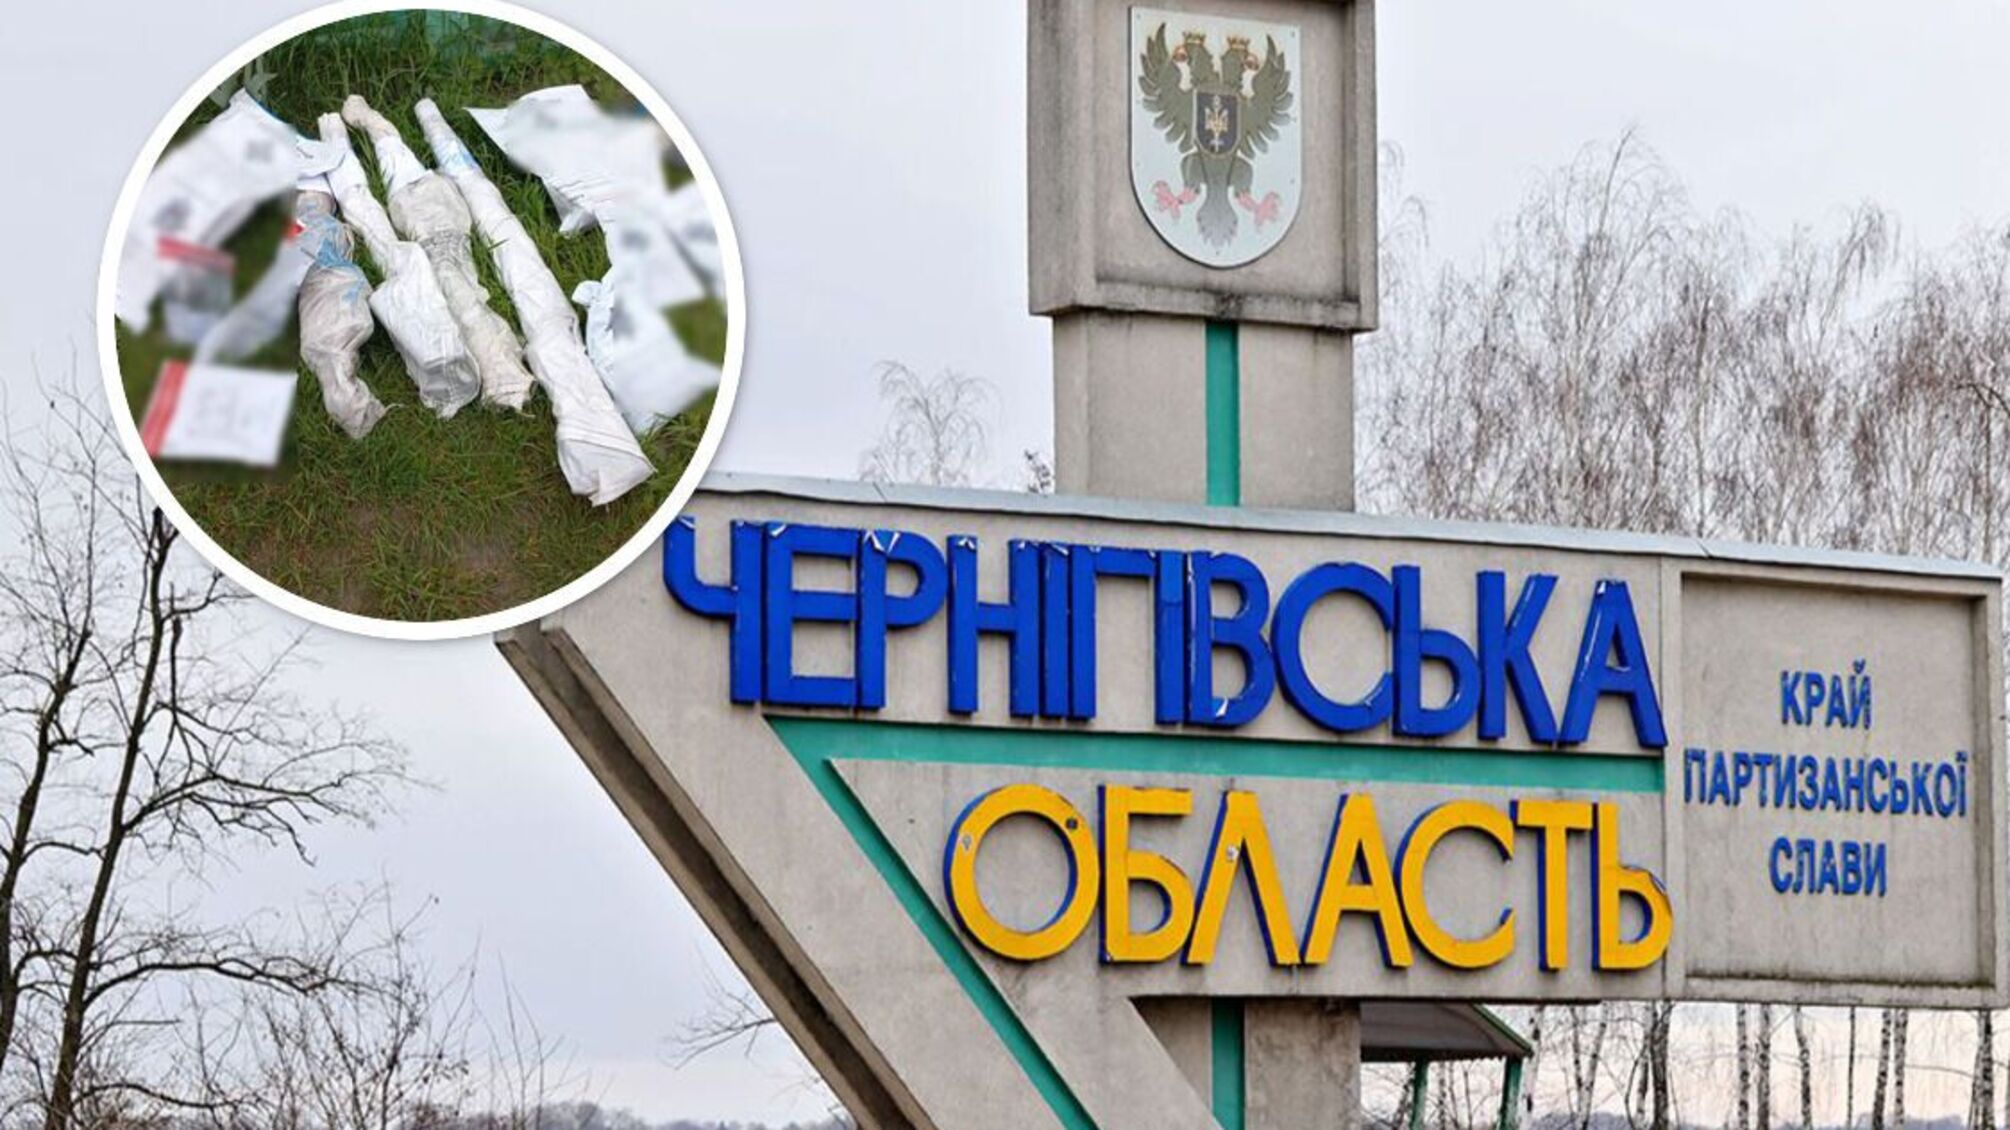 Набої, автомат і наркотики: на Чернігівщині виявили склад зброї - деталі